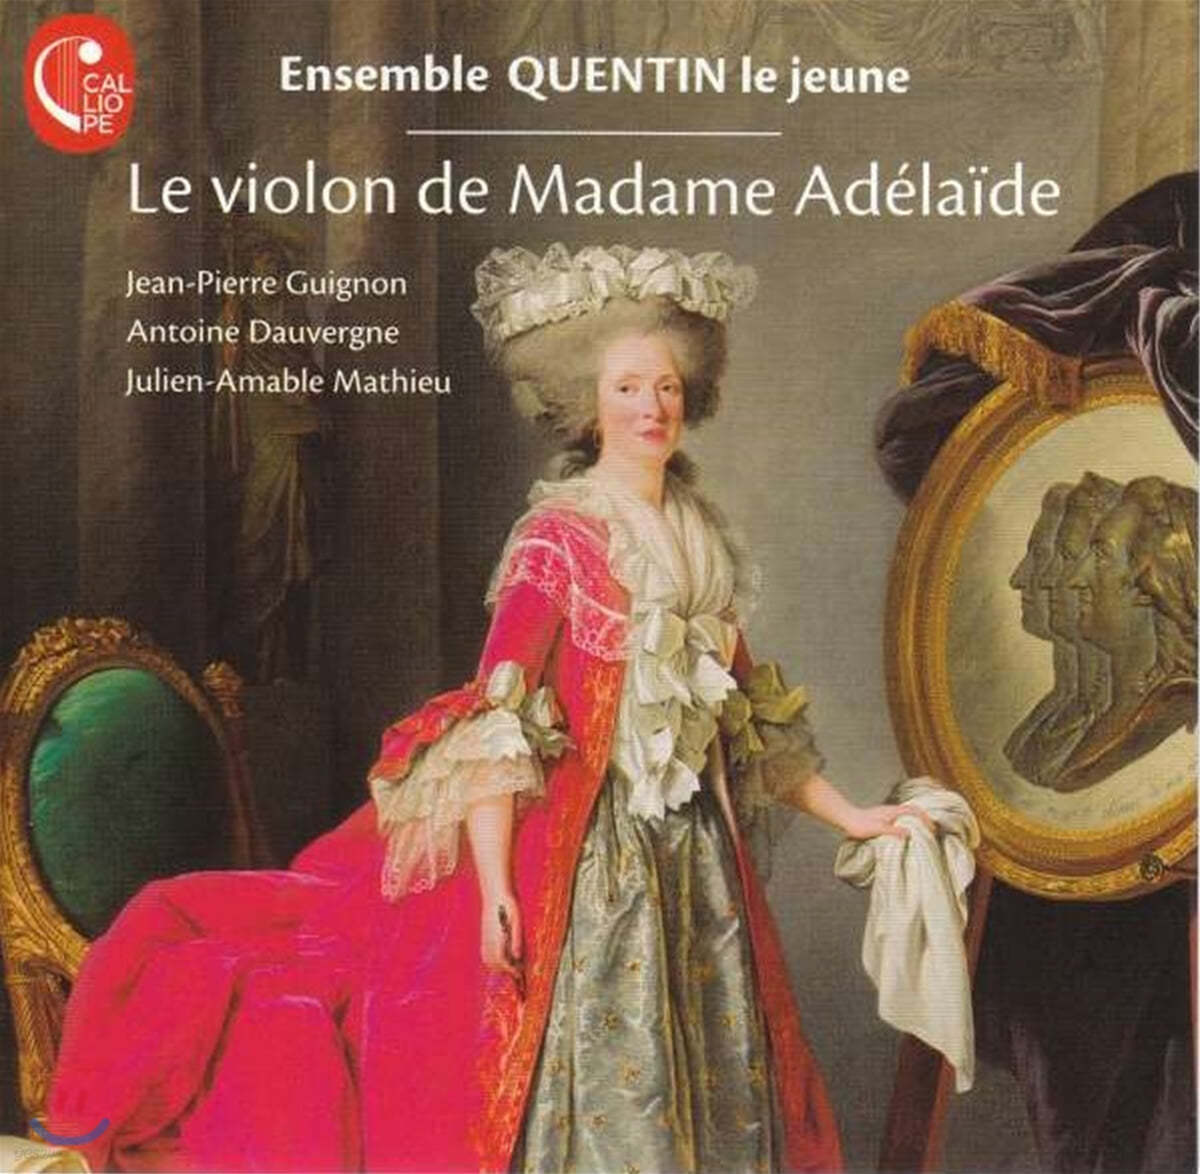 Ensemble Quentin le jeune 마담 아델라이드의 바이올린 (Le Violon de Madame Adelaide)